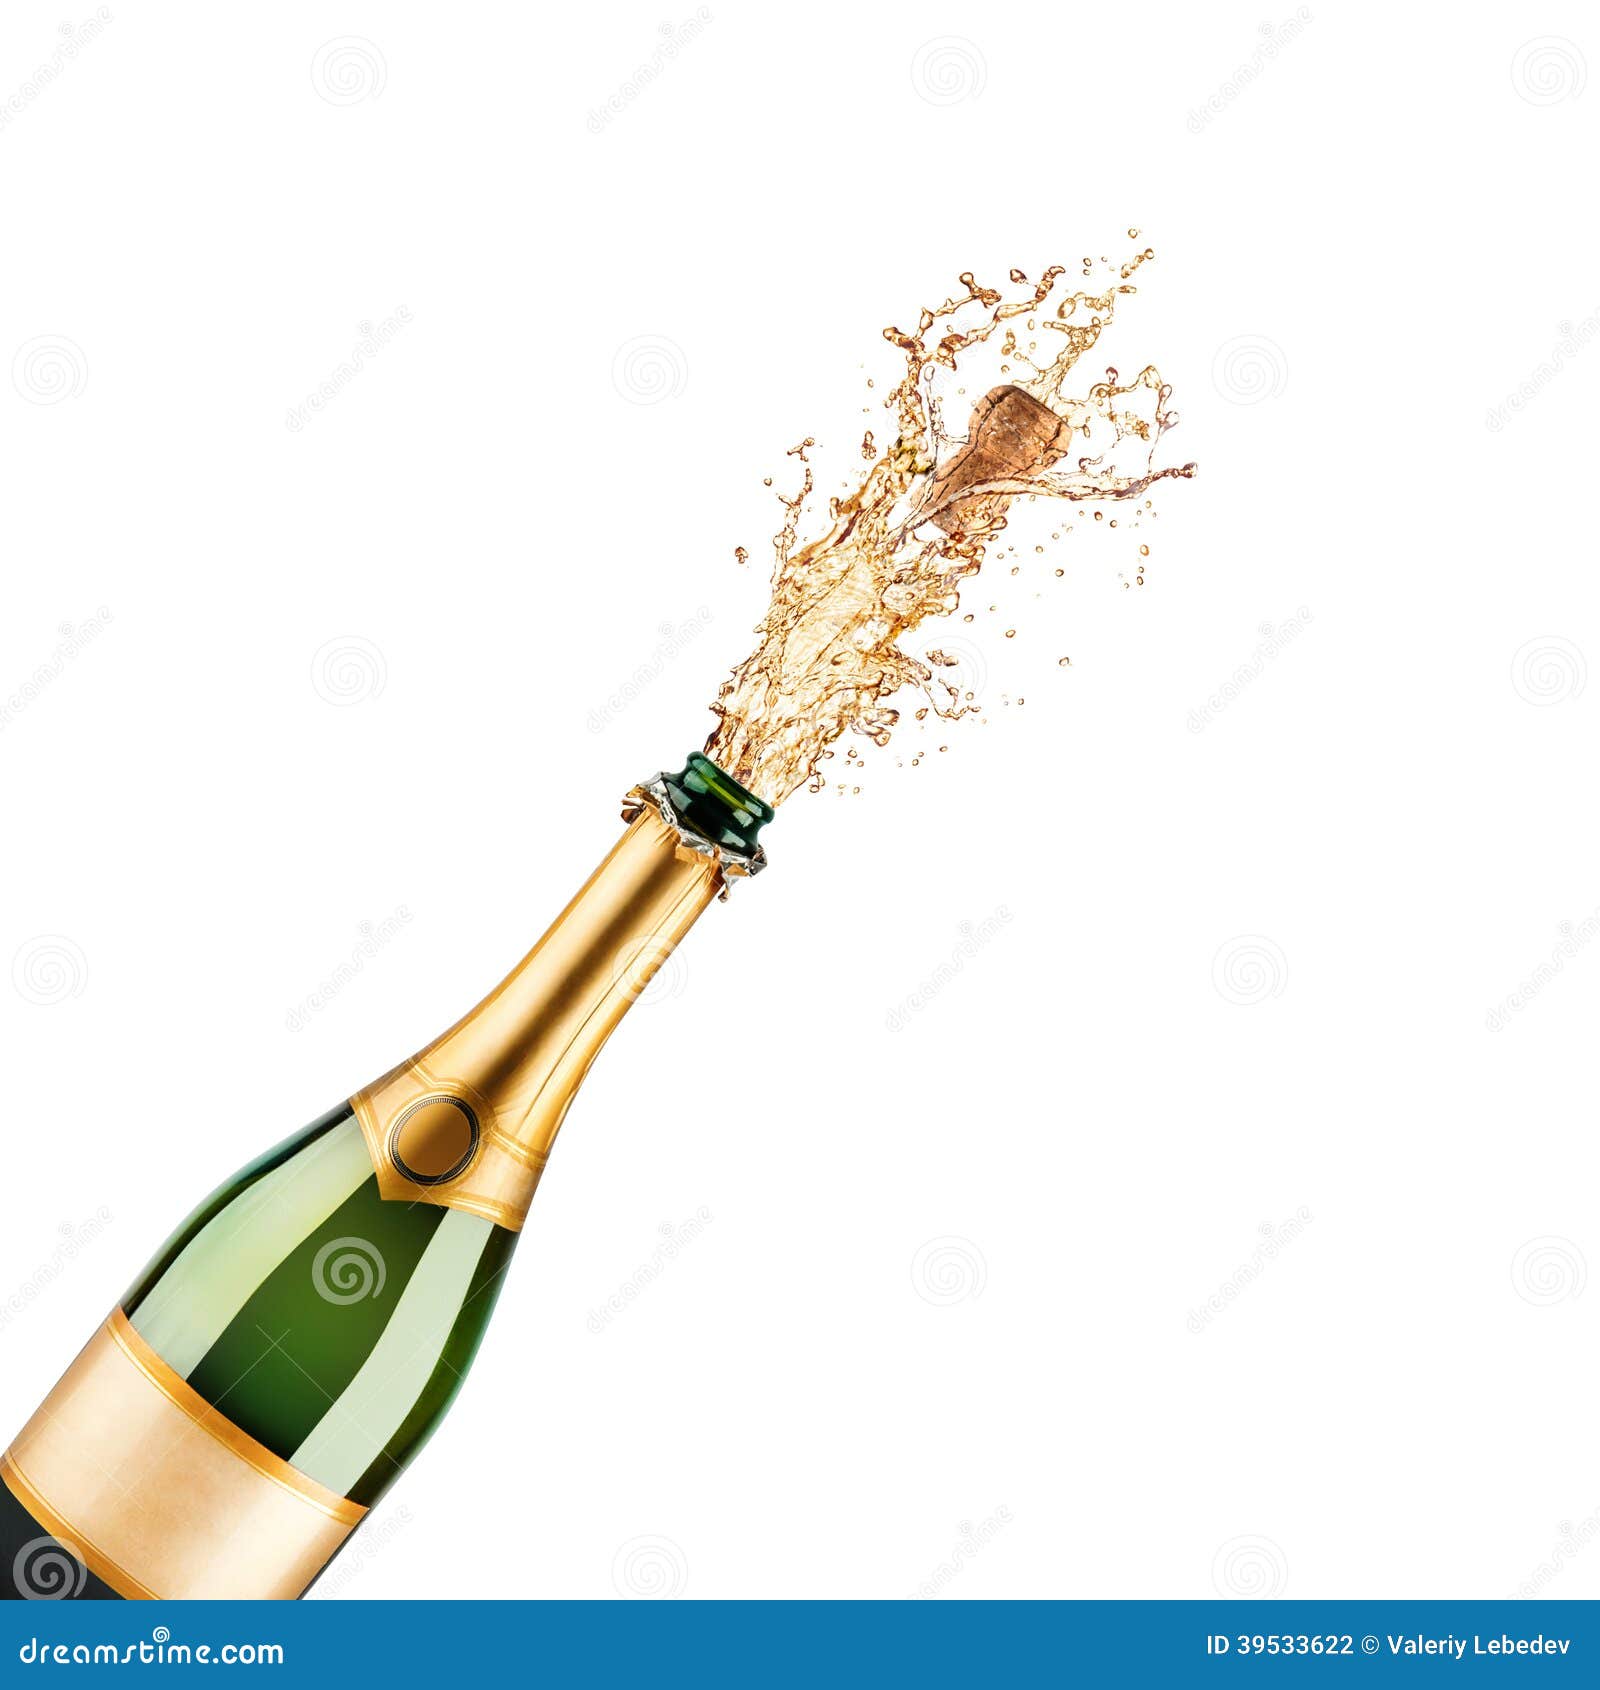 Psychologisch deze Realistisch Fles champagne stock foto. Image of vooravond, gebeurtenis - 39533622